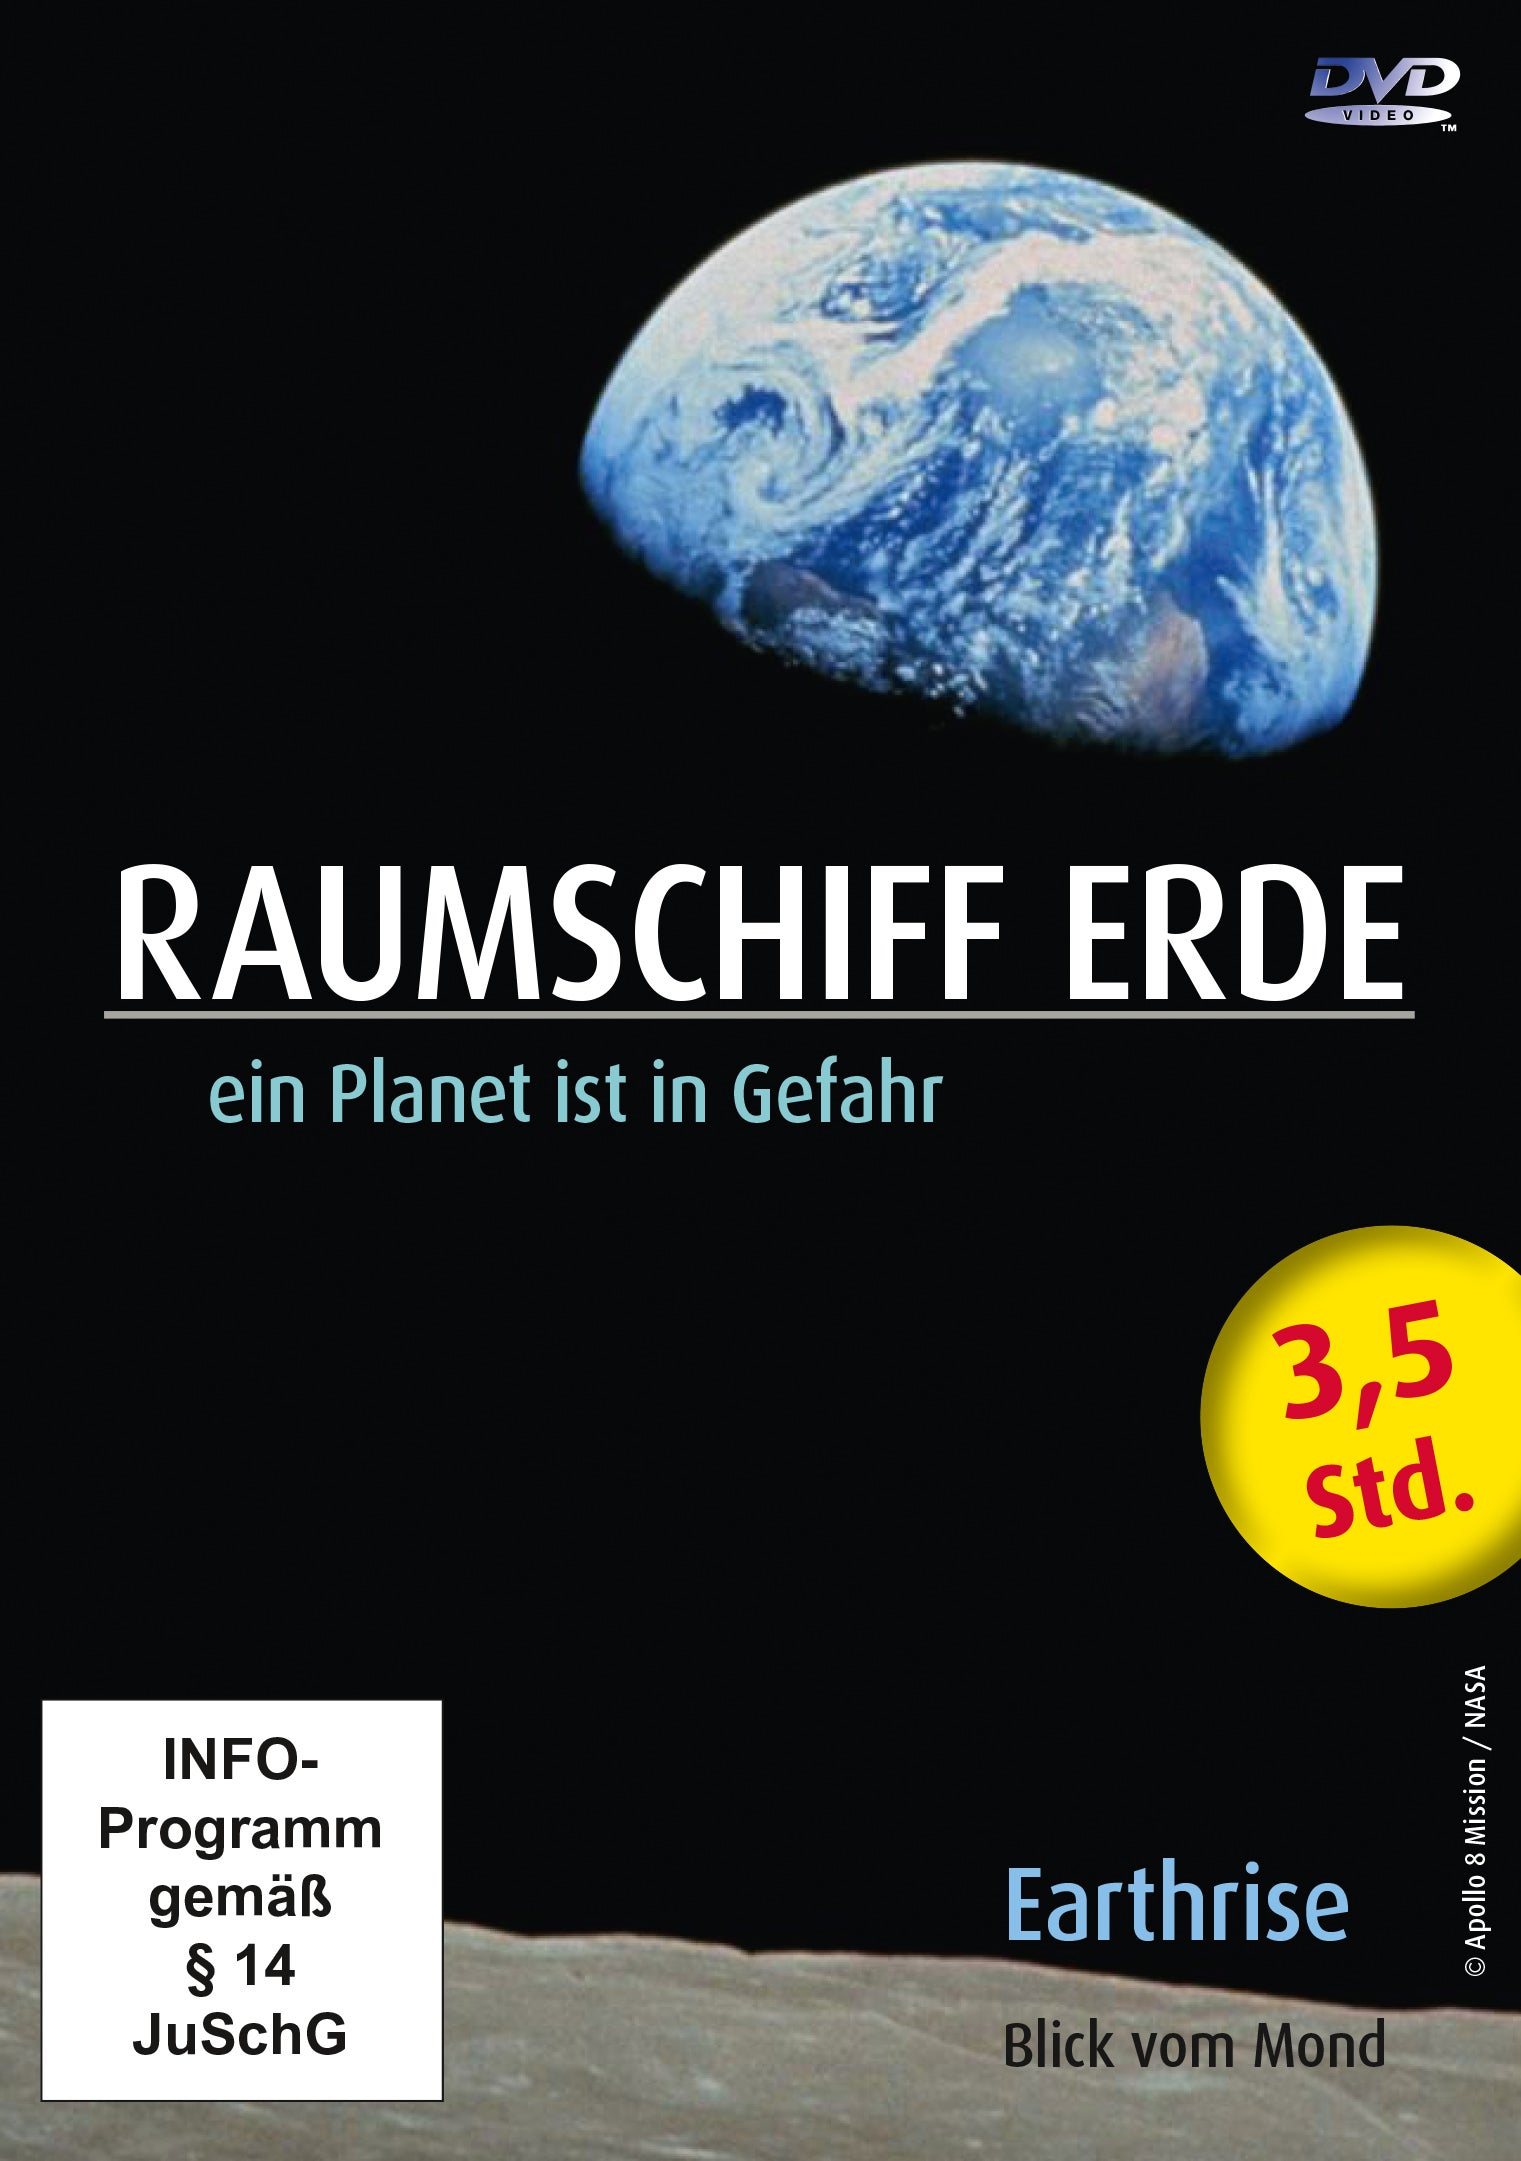 Raumschiff Erde [DVD]